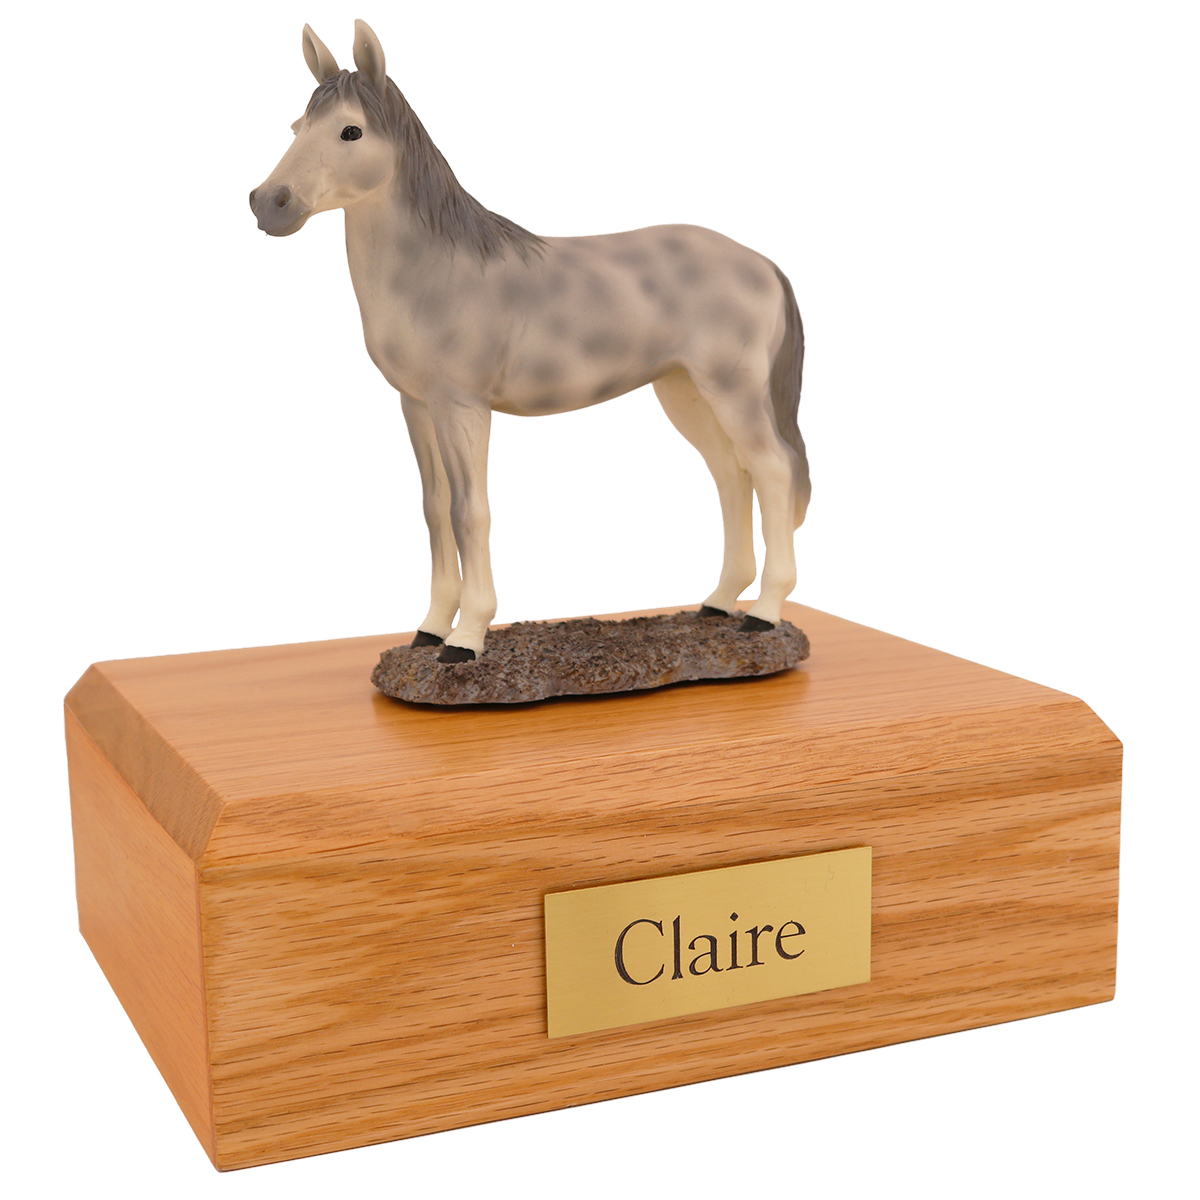 Horse, Dapple, Gray, Standing - Figurine Urn